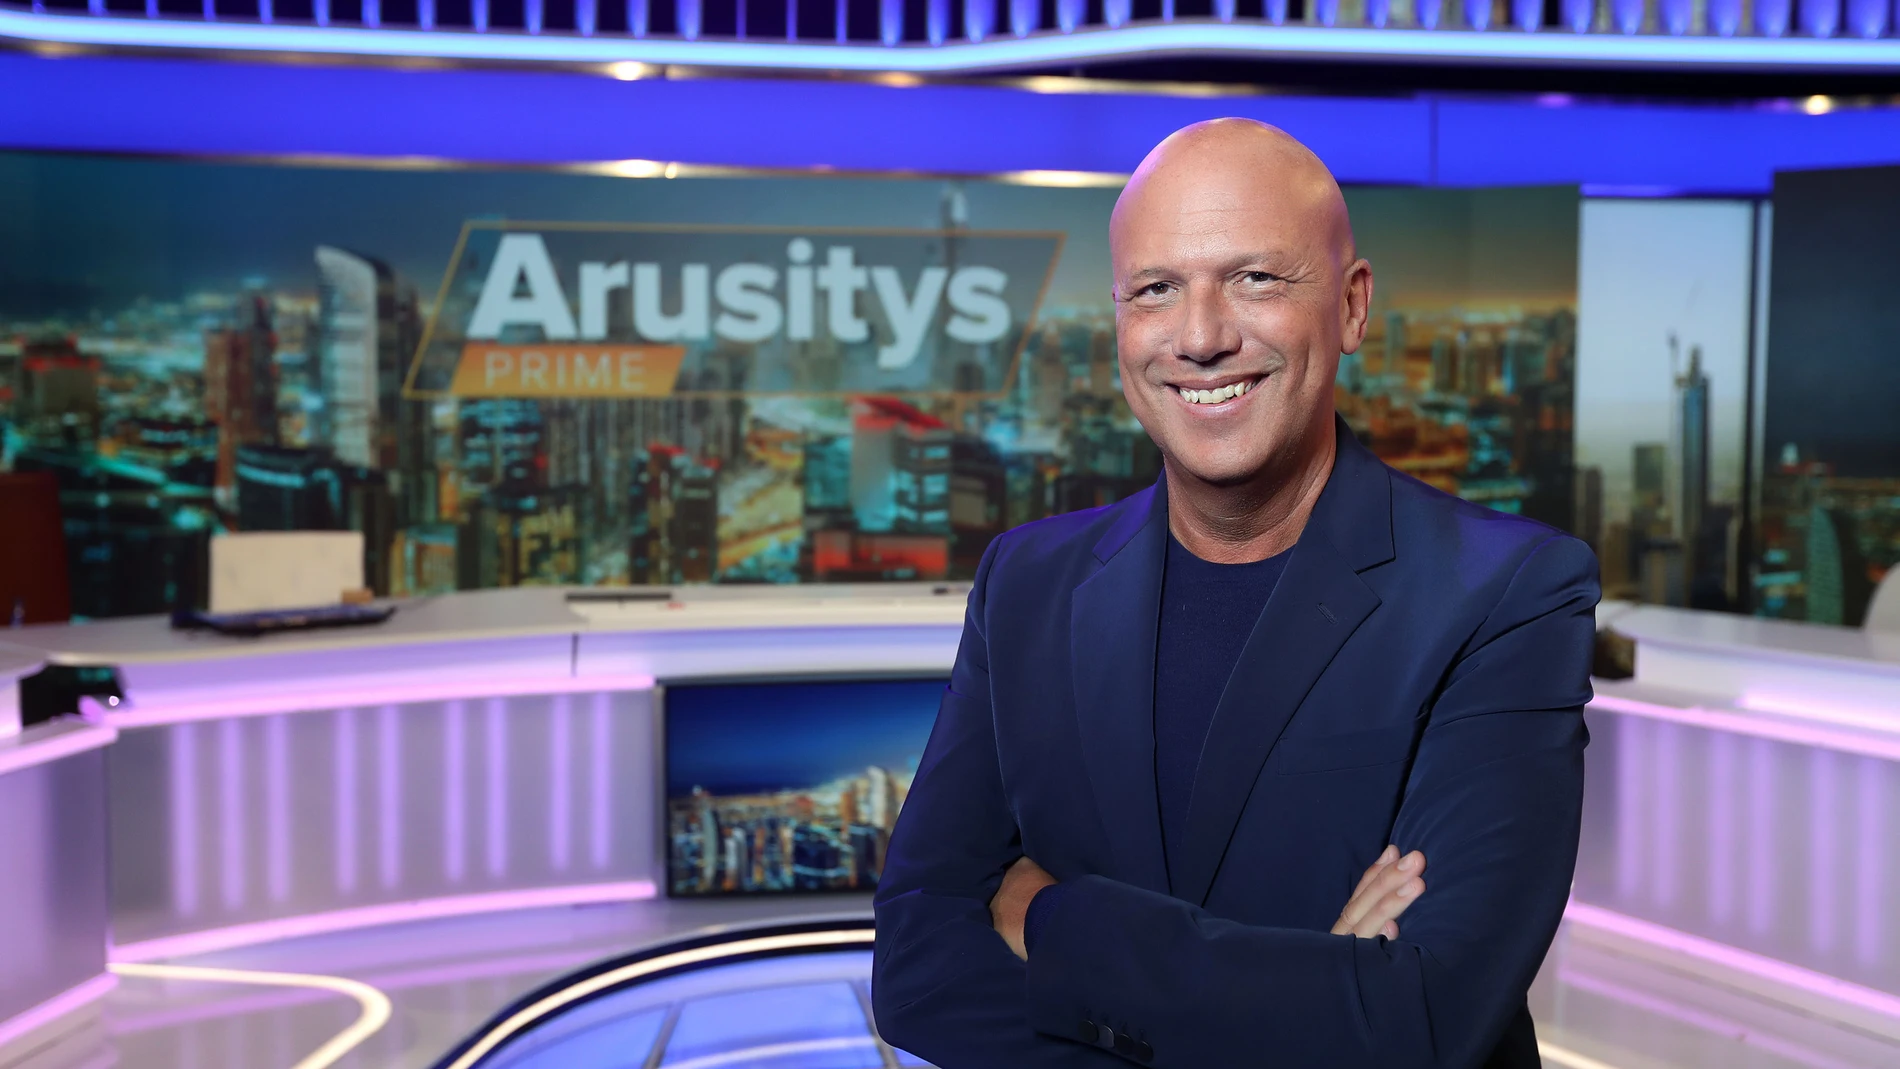 Alfonso Arús en el plató de «Arusitys Prime», un programa en directo que se estrena hoy en Antena 3